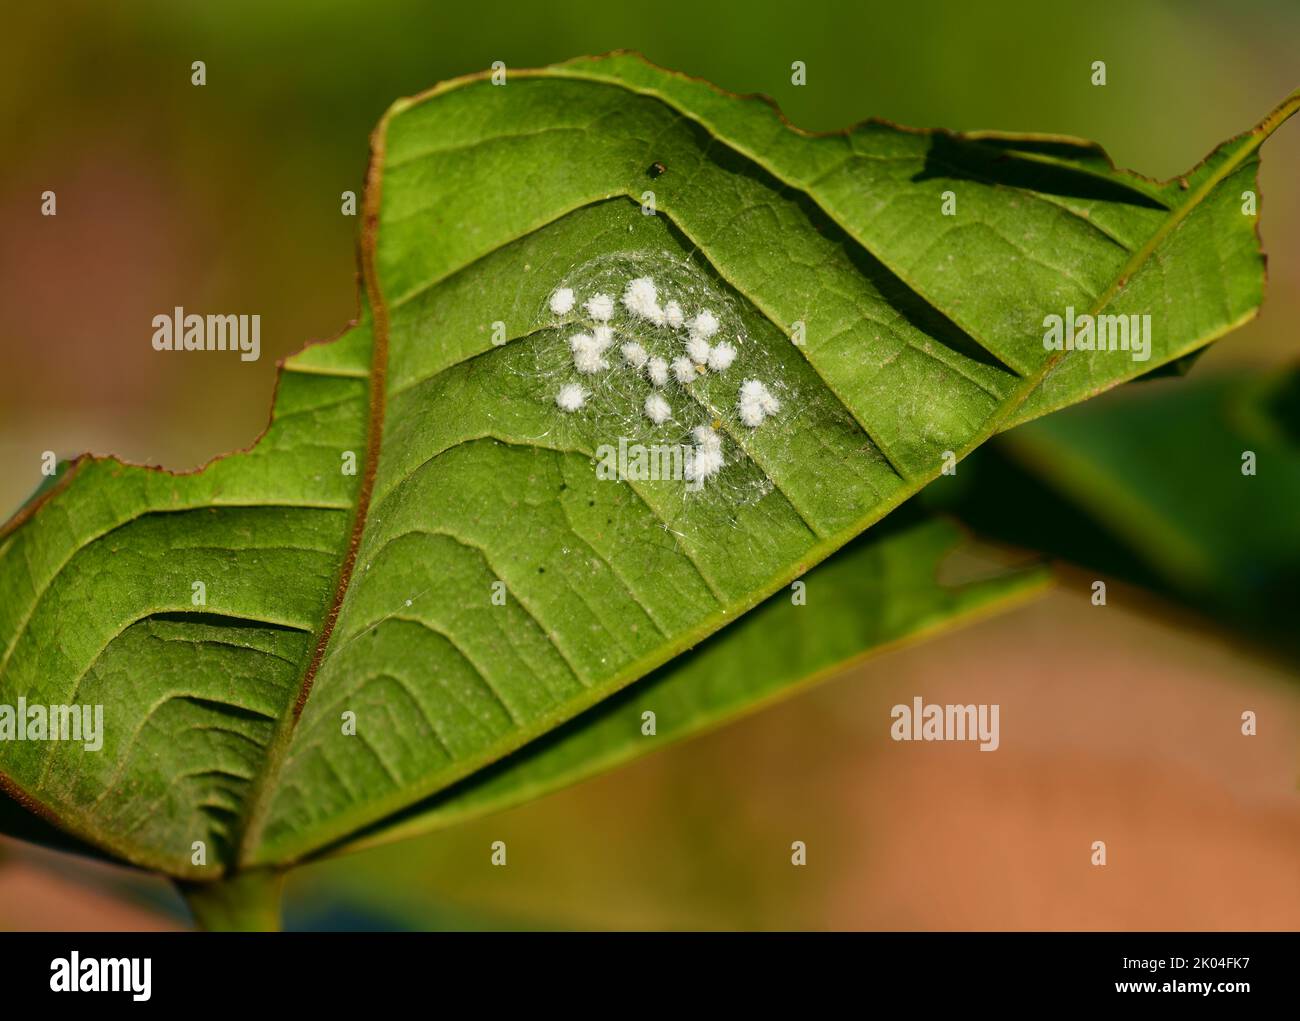 Silverleaf whitefly (Bemisia tabaci) infestation underside a leaf Stock Photo